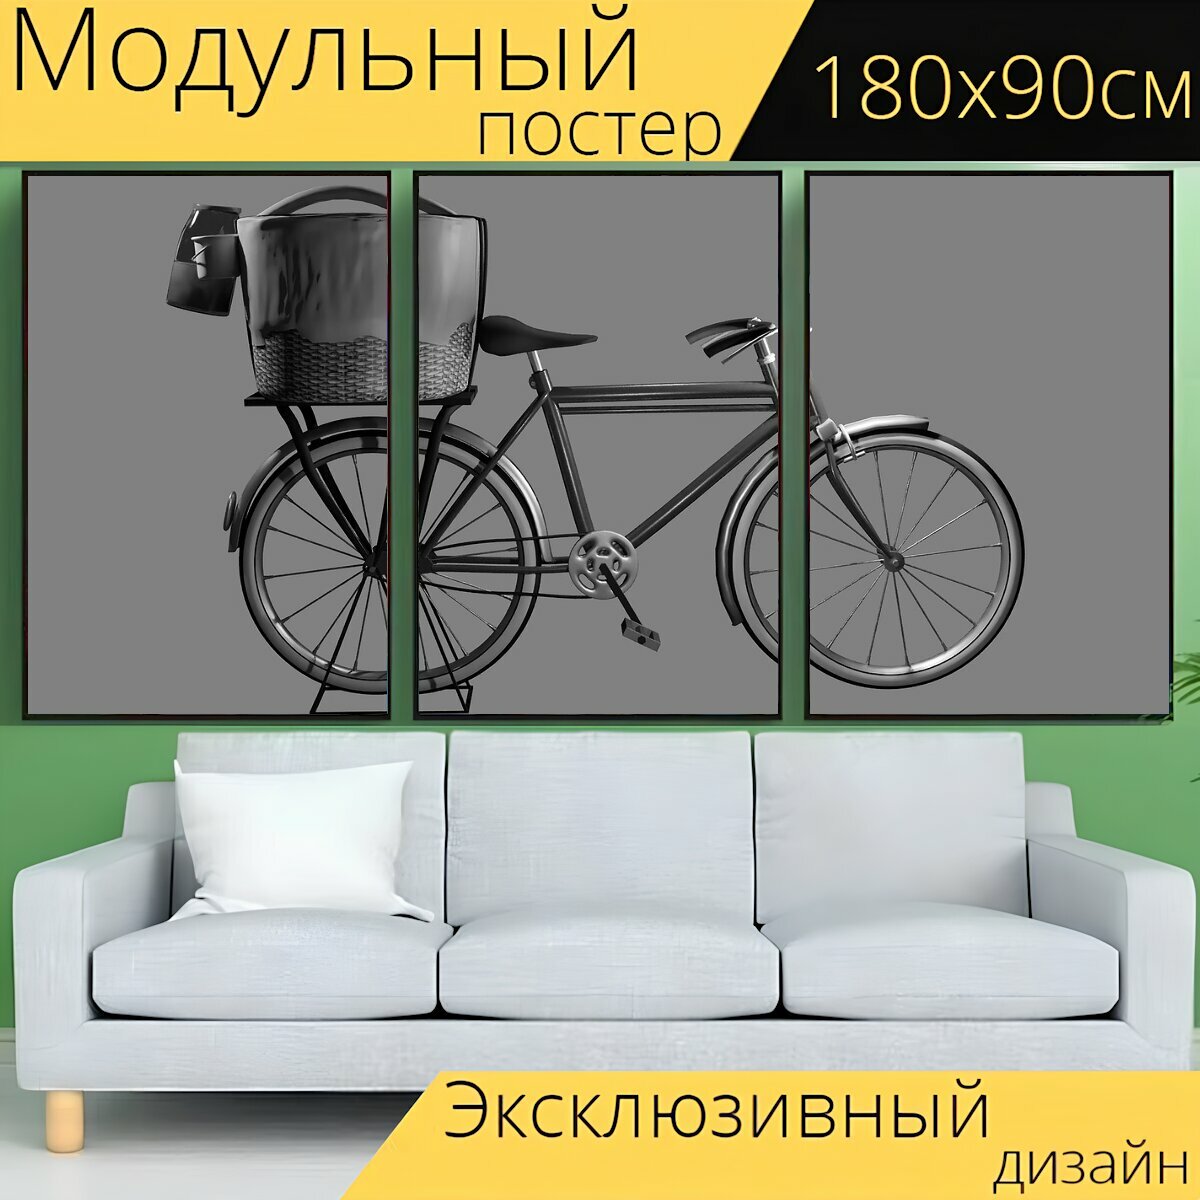 Модульный постер "Велосипед, корзина, транспорт" 180 x 90 см. для интерьера